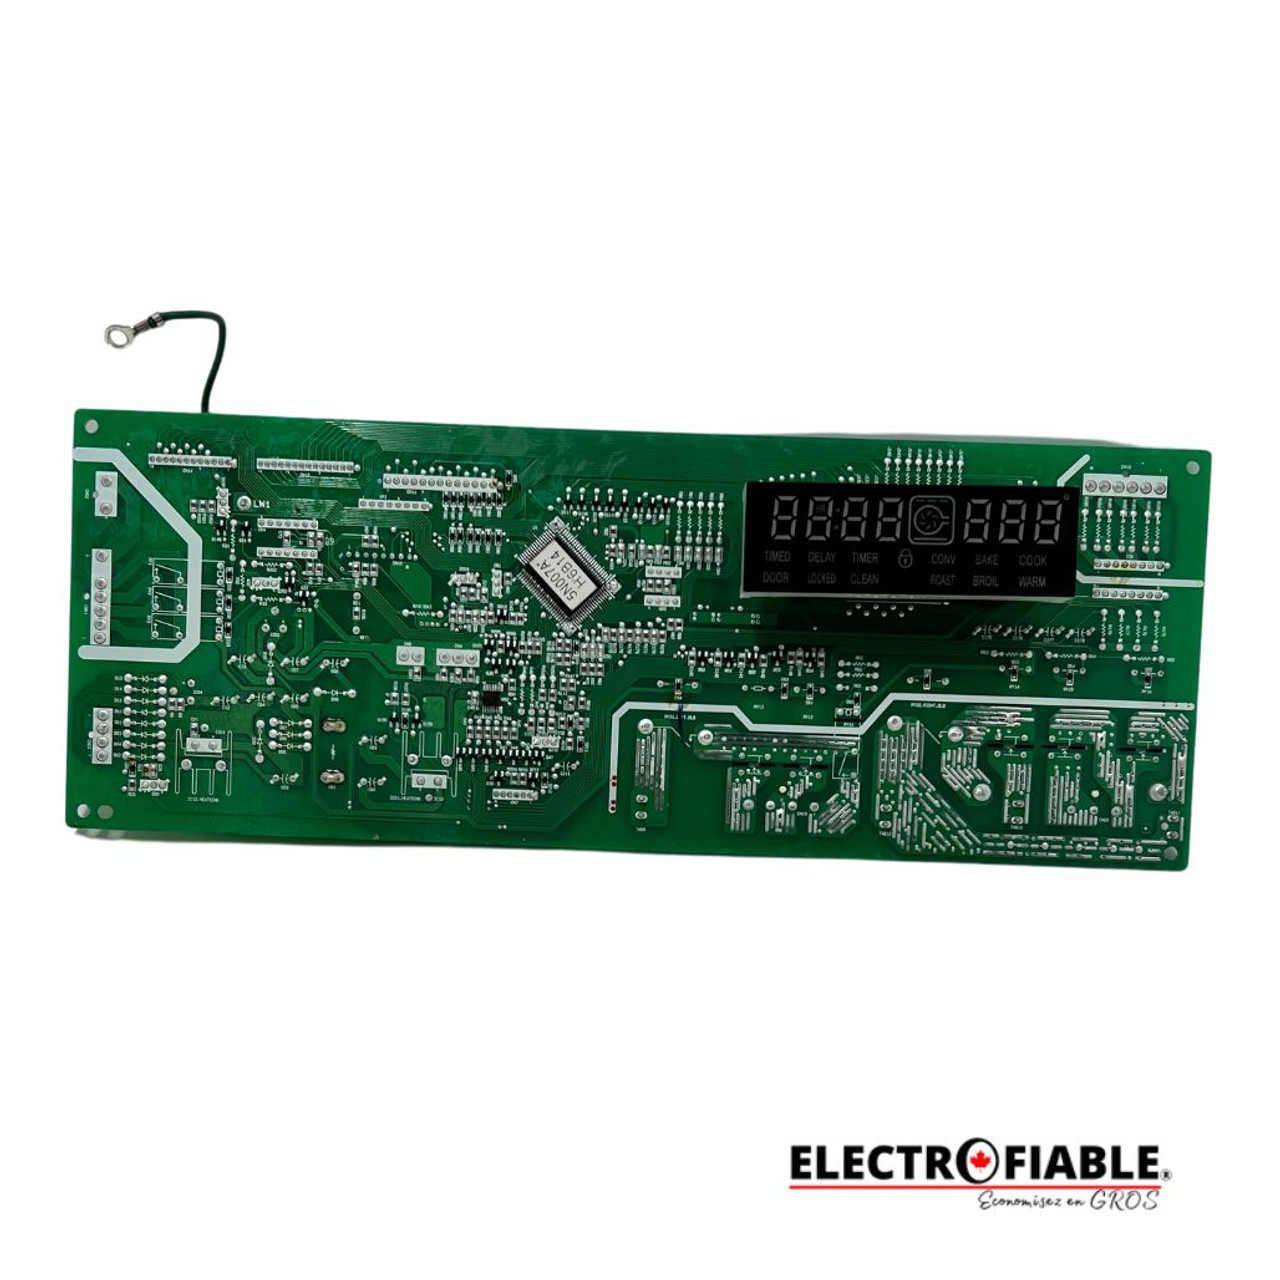 EBR74632606 Oven Control Board PCB LG